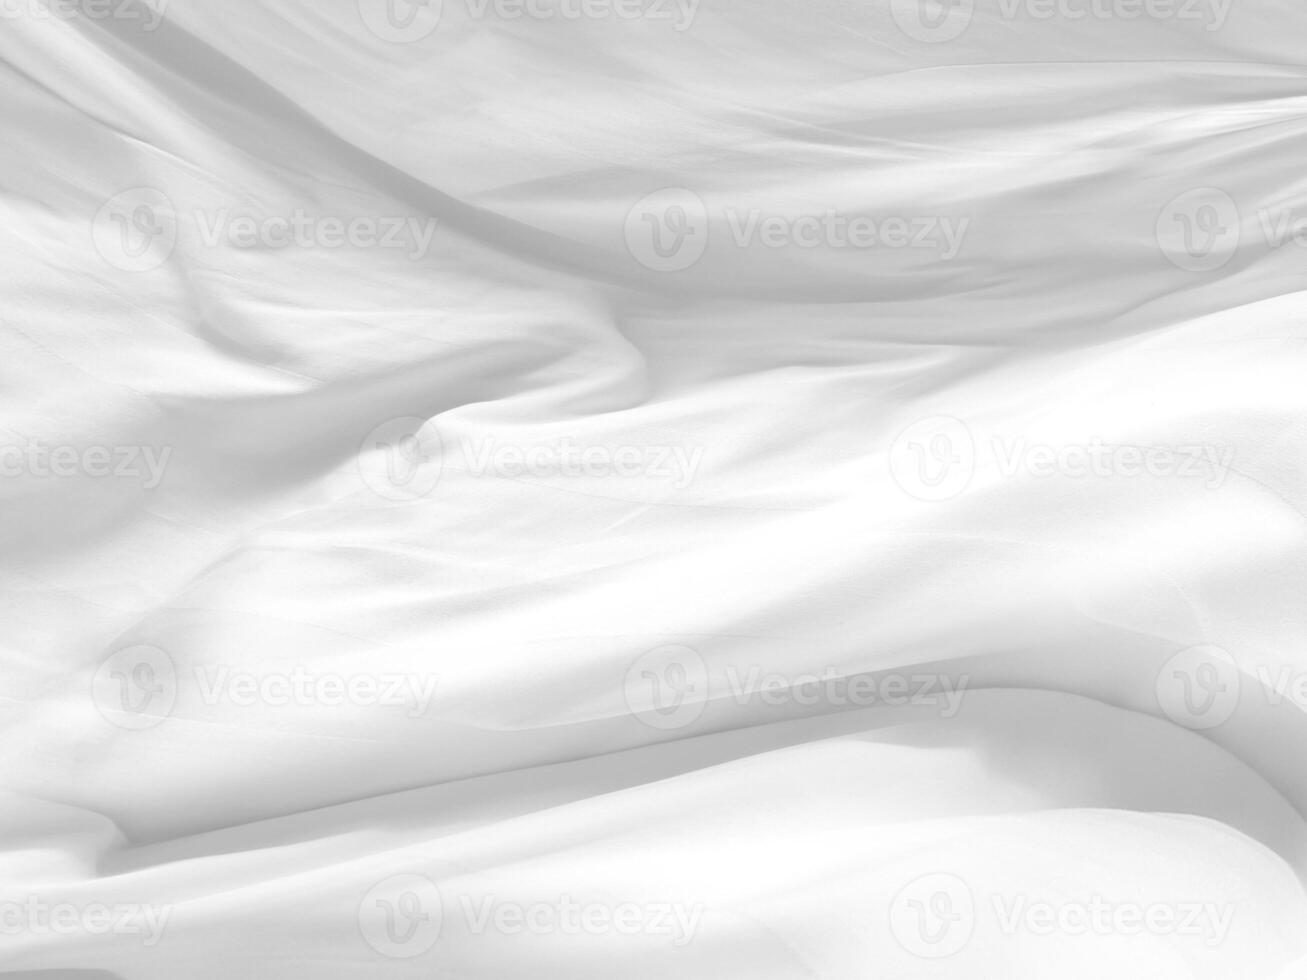 belleza blanco liso abstracto tejido limpio y suave con textura. moda textil estilo libre forma decorar fondo foto